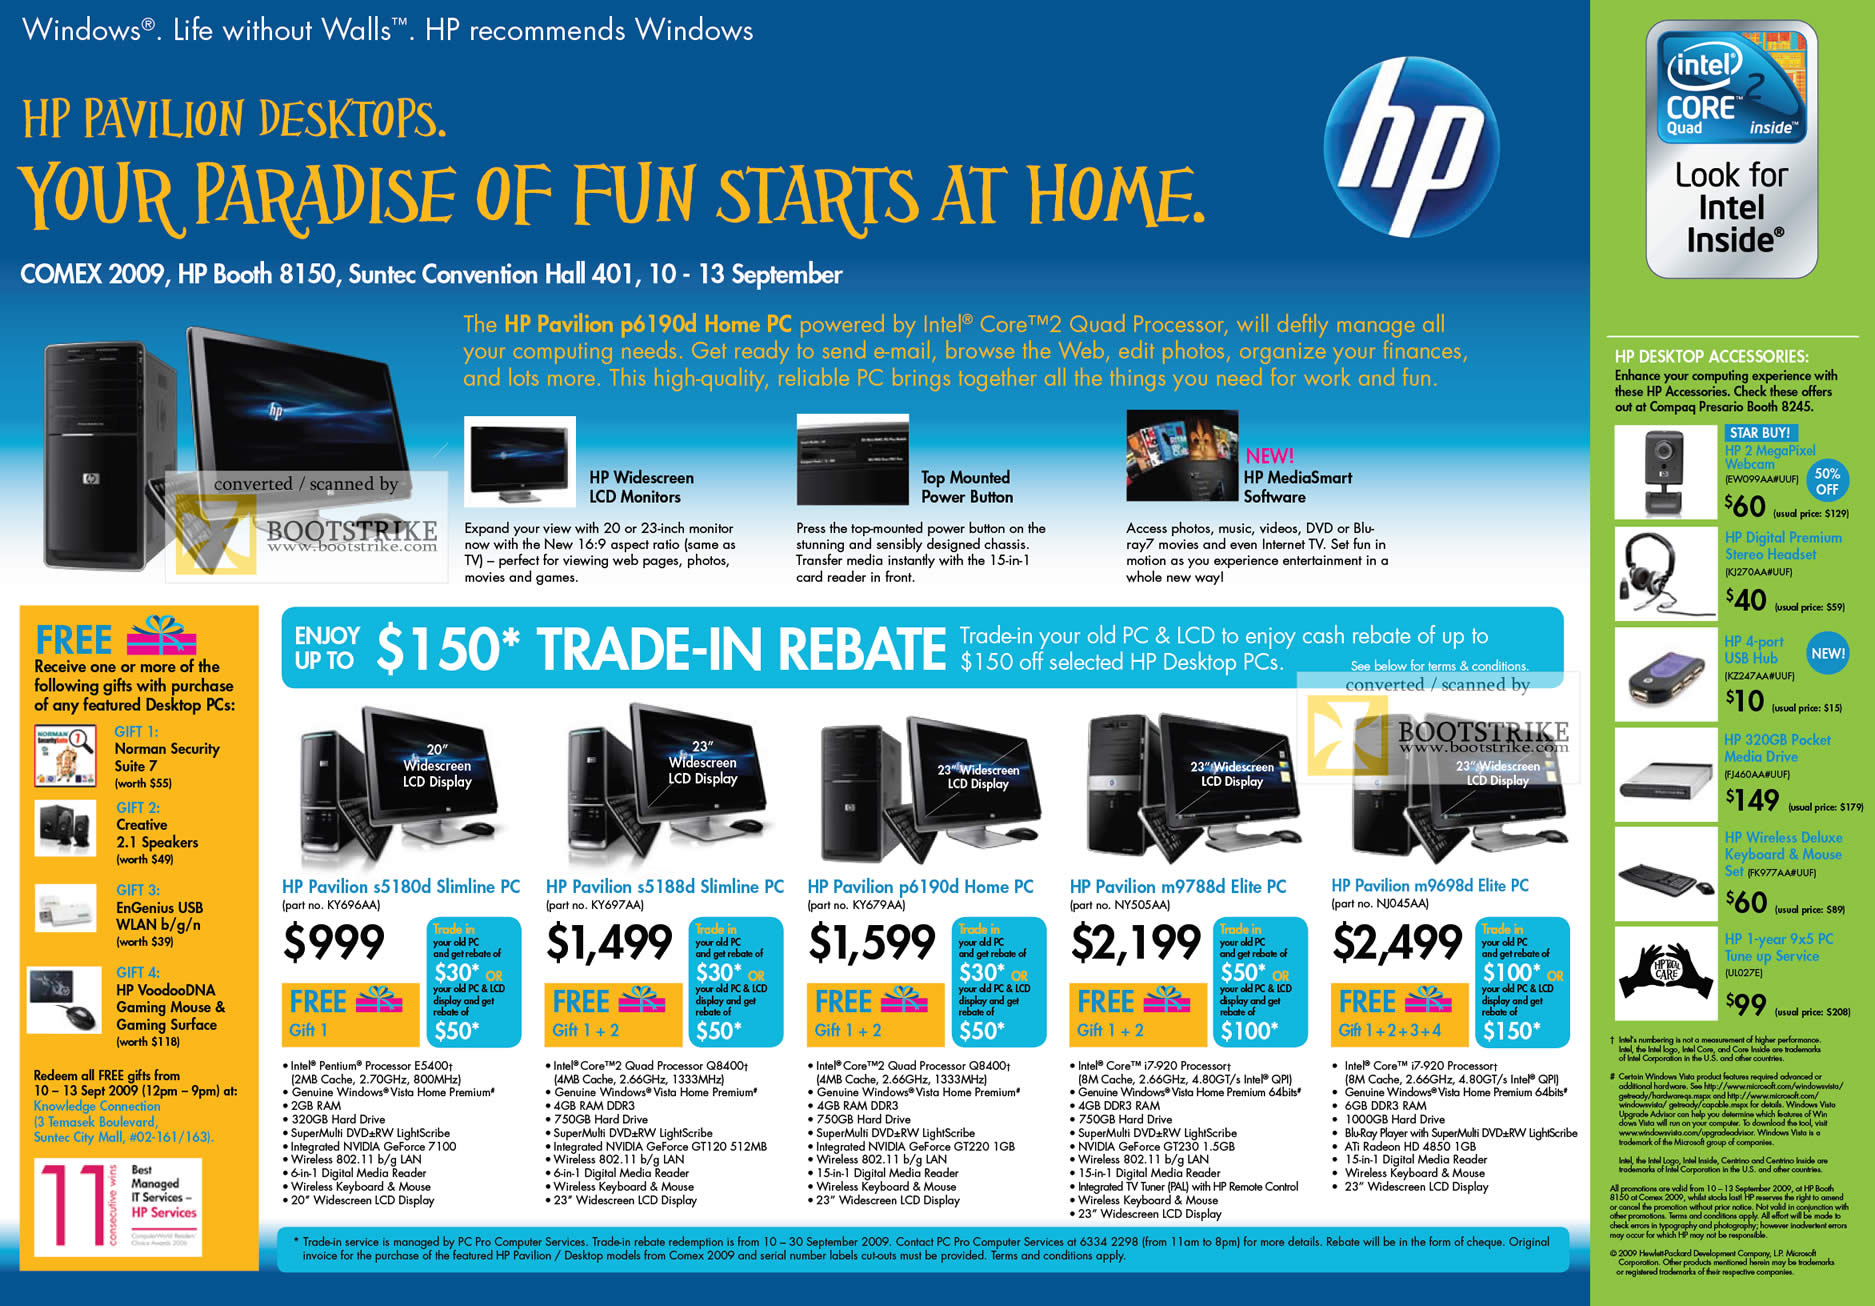 Comex 2009 price list image brochure of HP Pavilion Desktop Elite Slimline S5180d S5188d P6190d M9788d M9698d